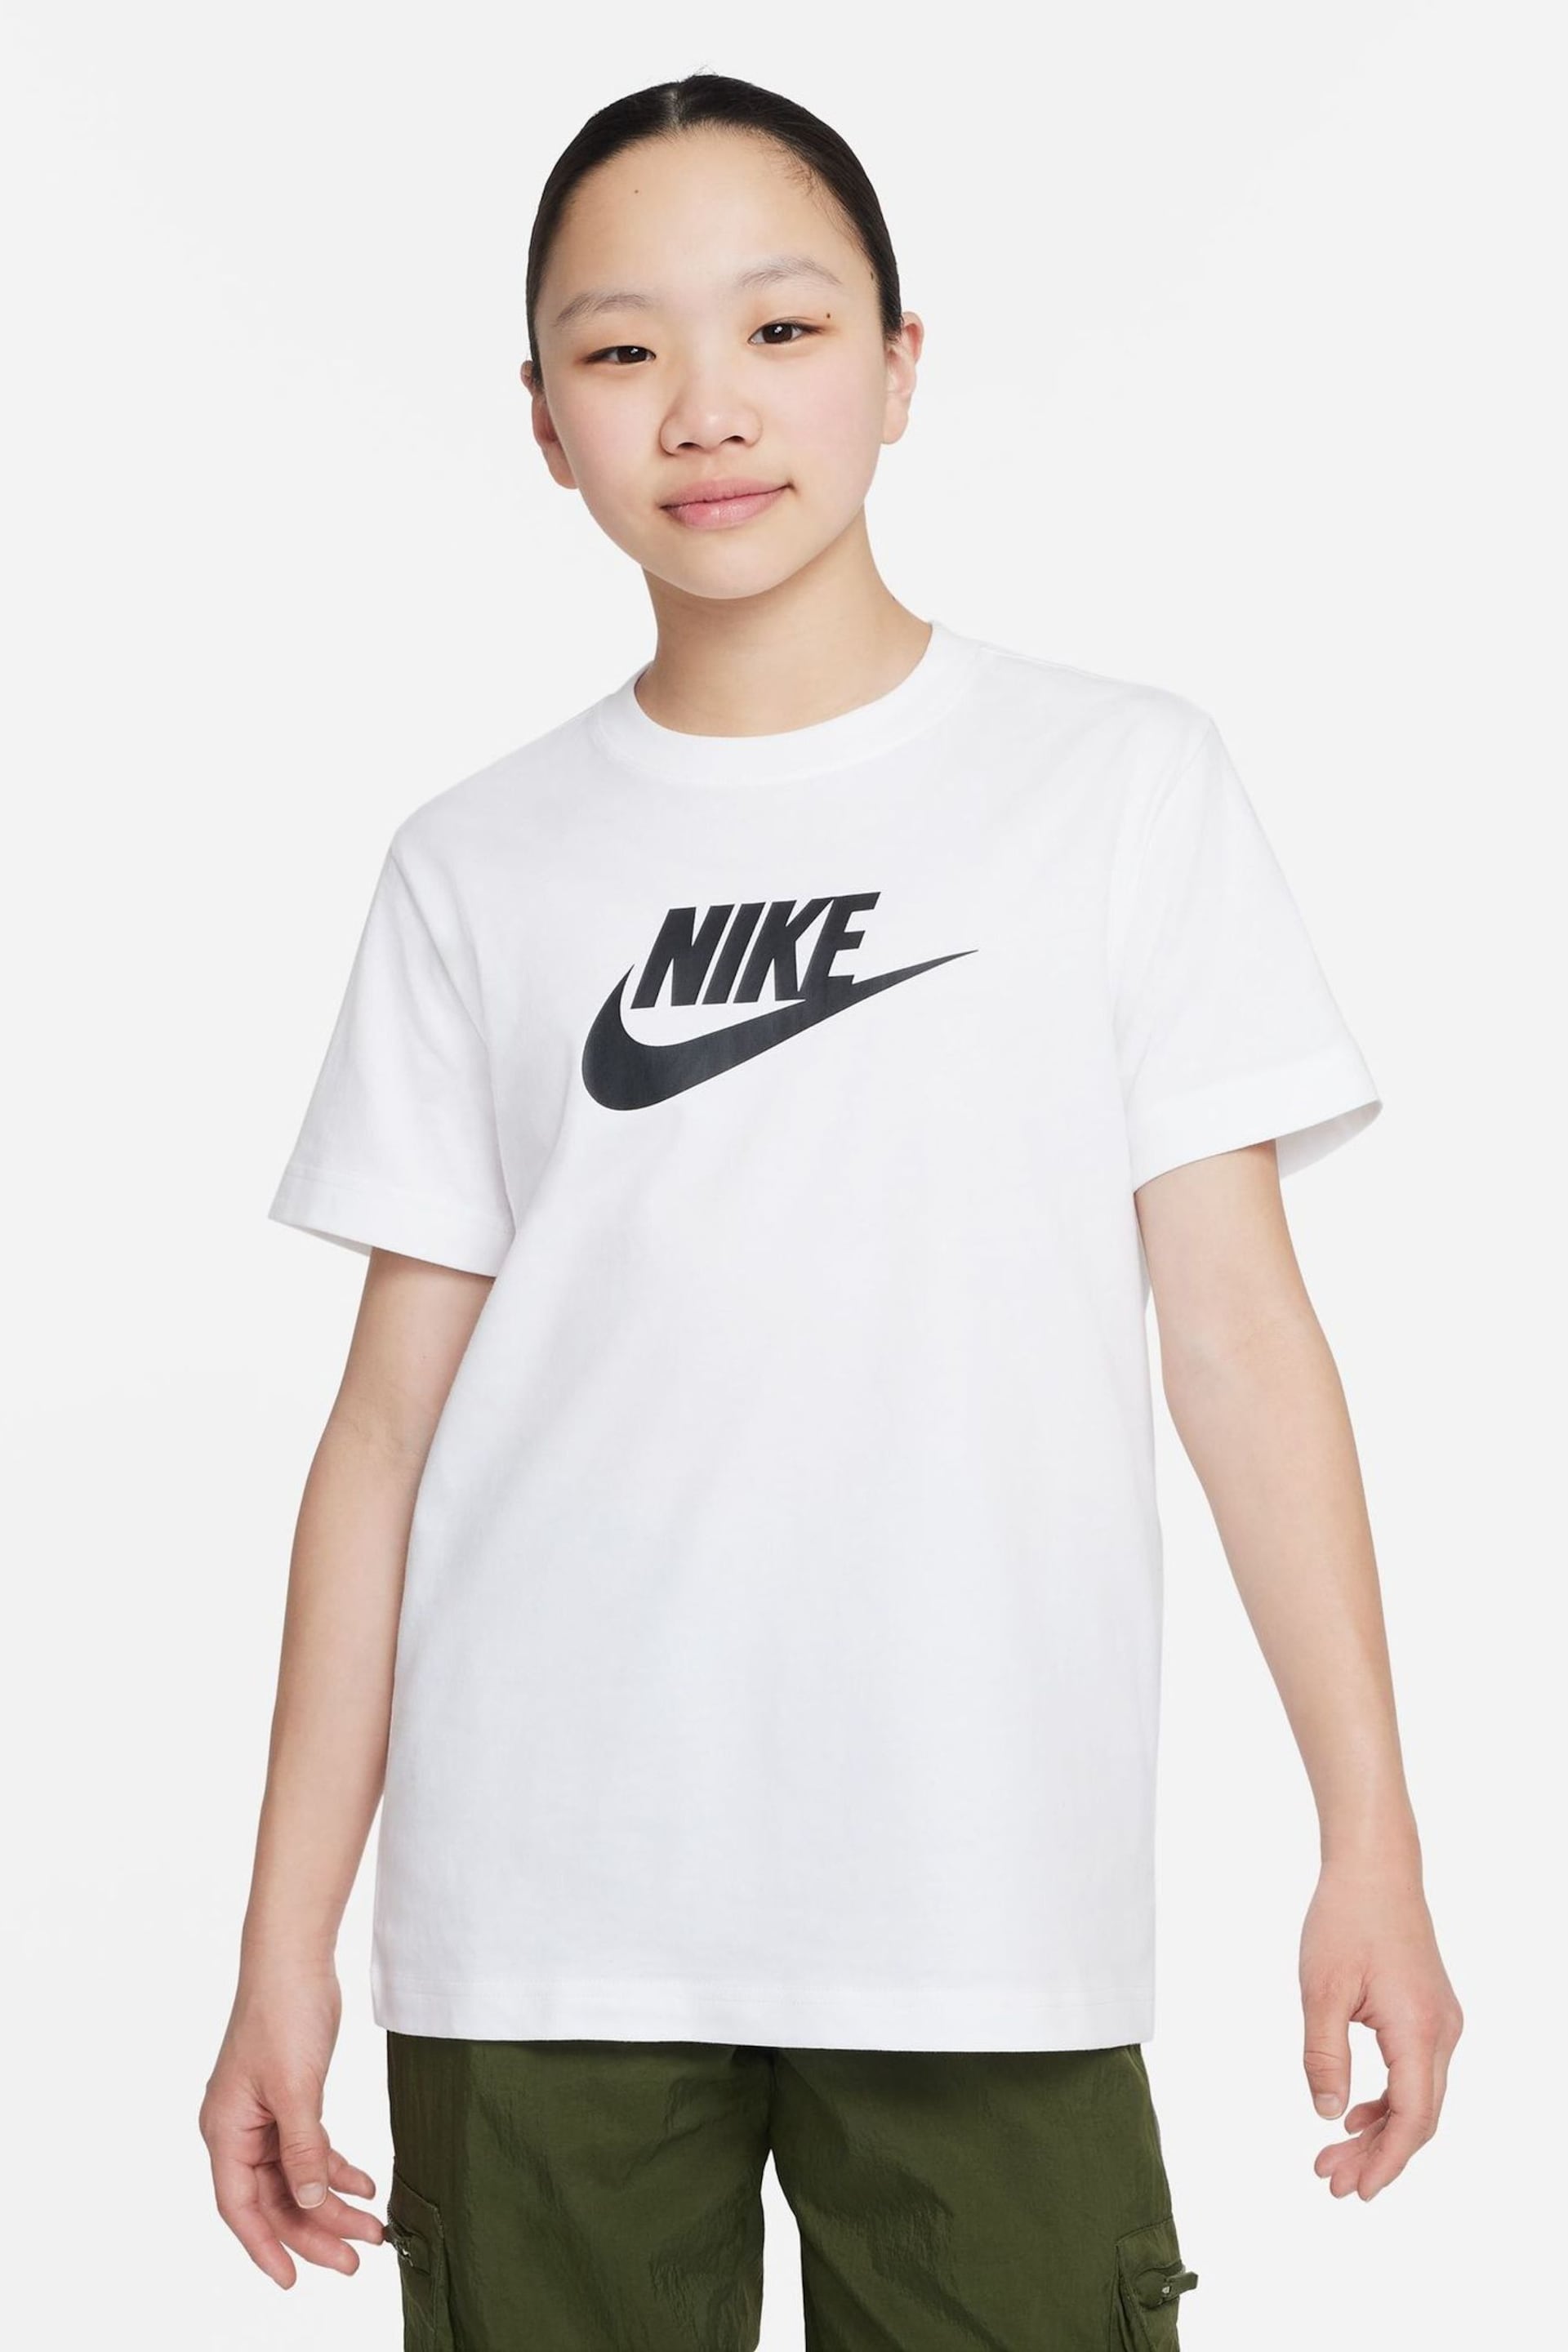 Nike White Oversized Futura T-Shirt - Image 1 of 4